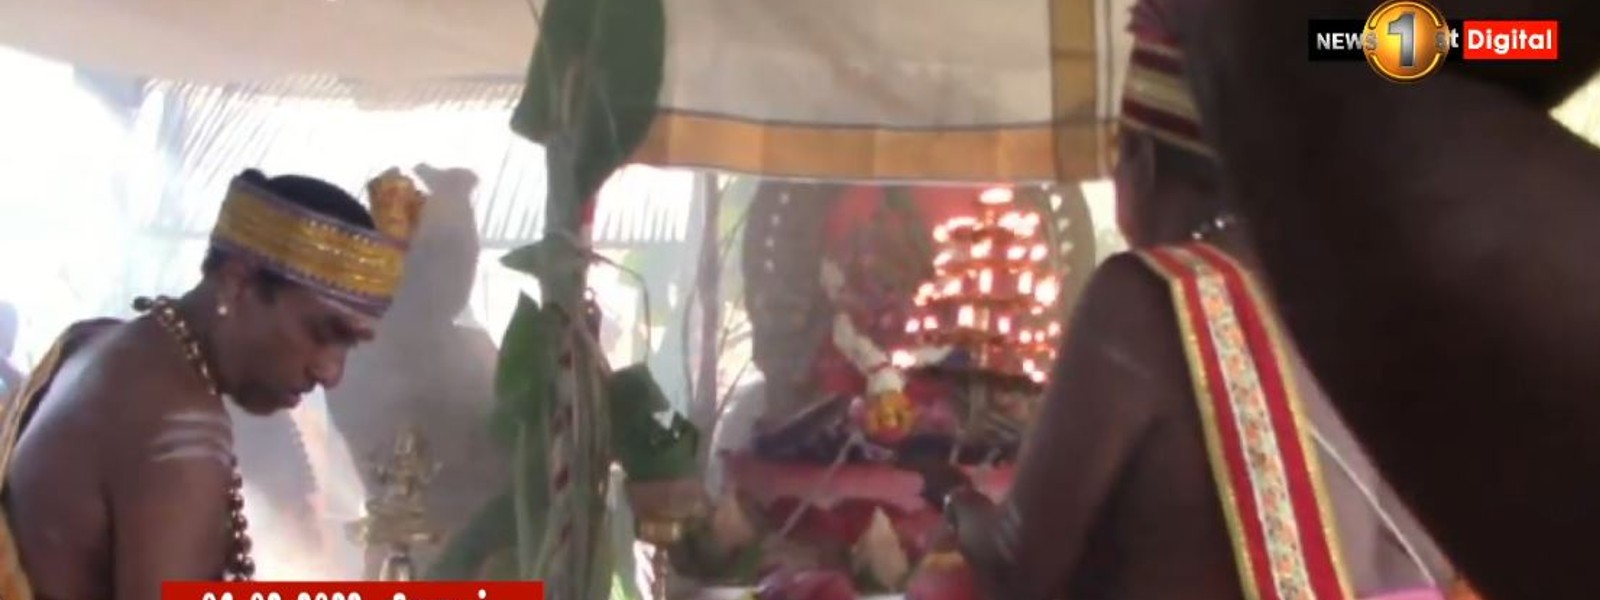 முன்னேஸ்வரம் ஶ்ரீ பிரத்யங்கிரா தேவி ஆலய மகா கும்பாபிஷேக பெருவிழா